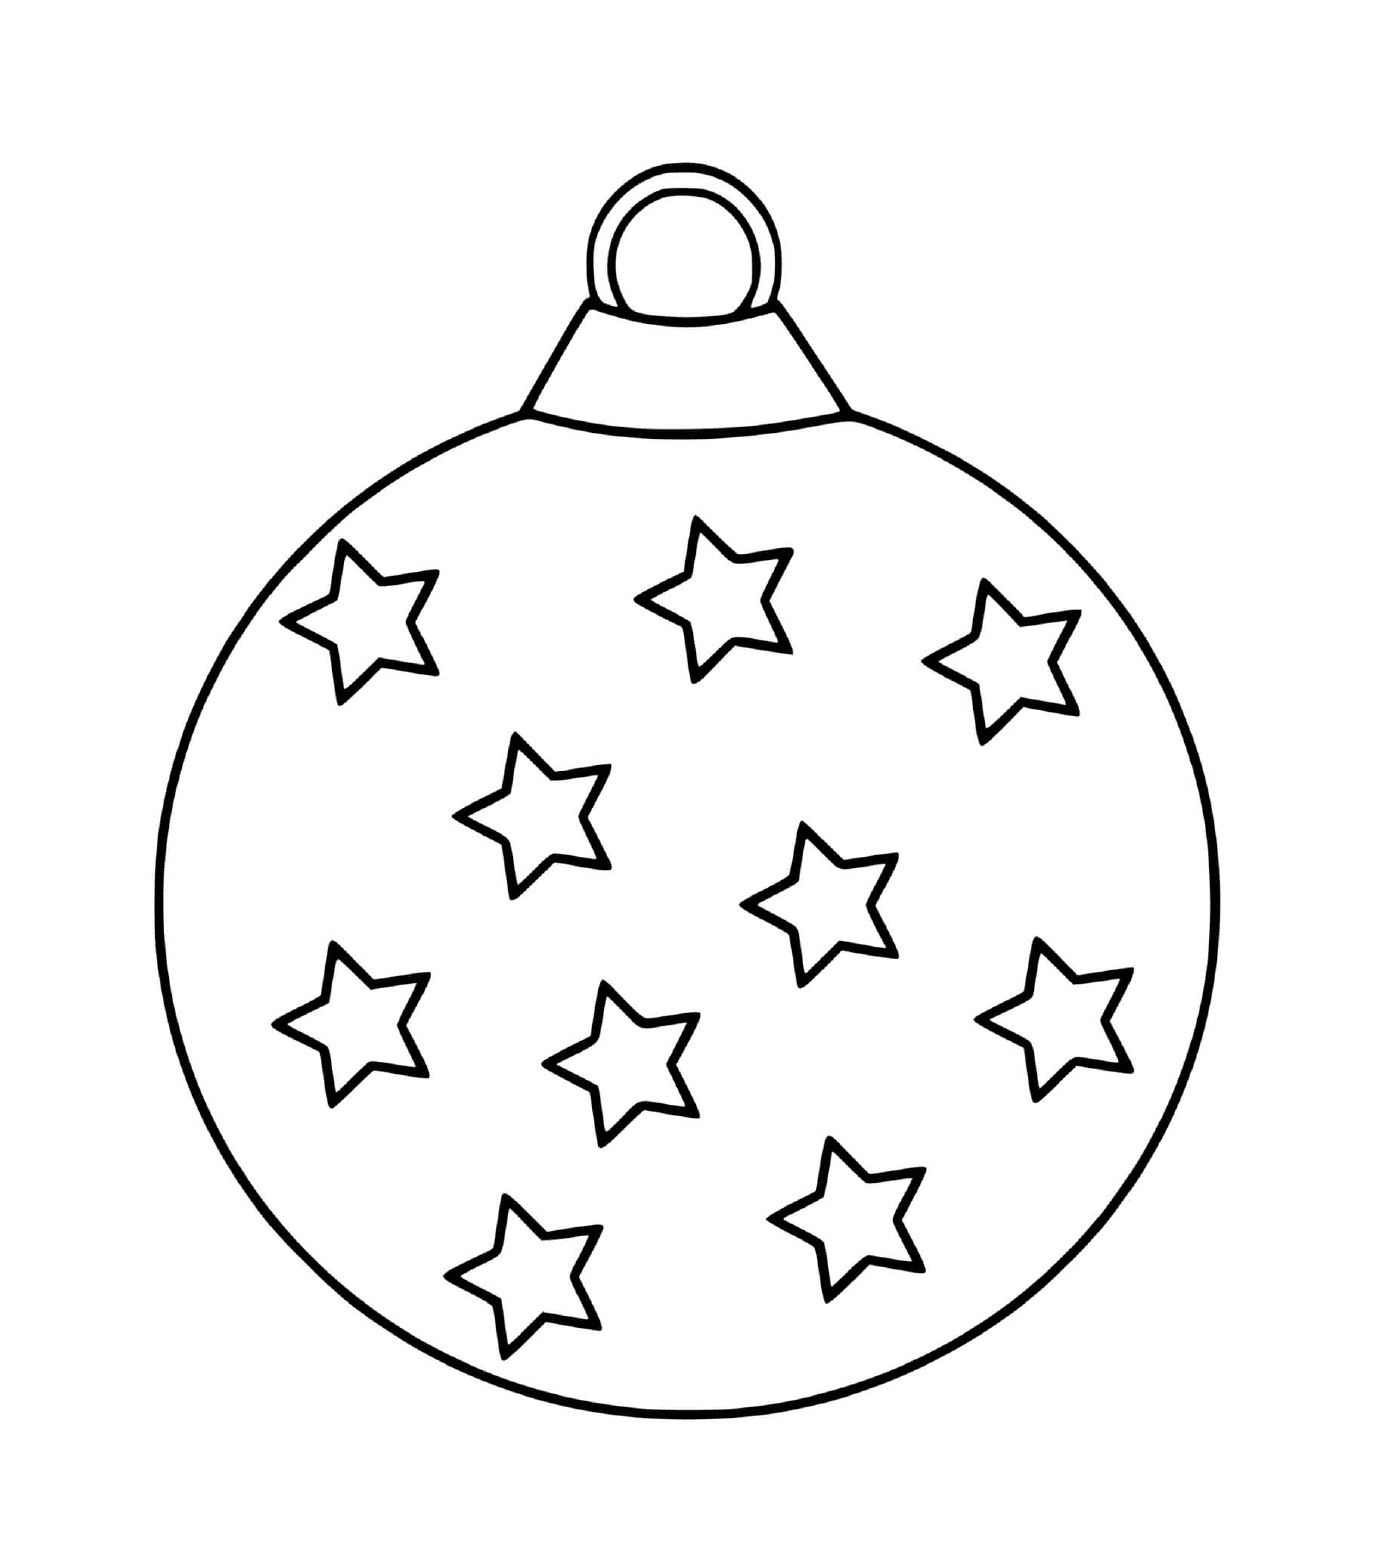  Ein mütterlicher Weihnachtsball mit Sternen 